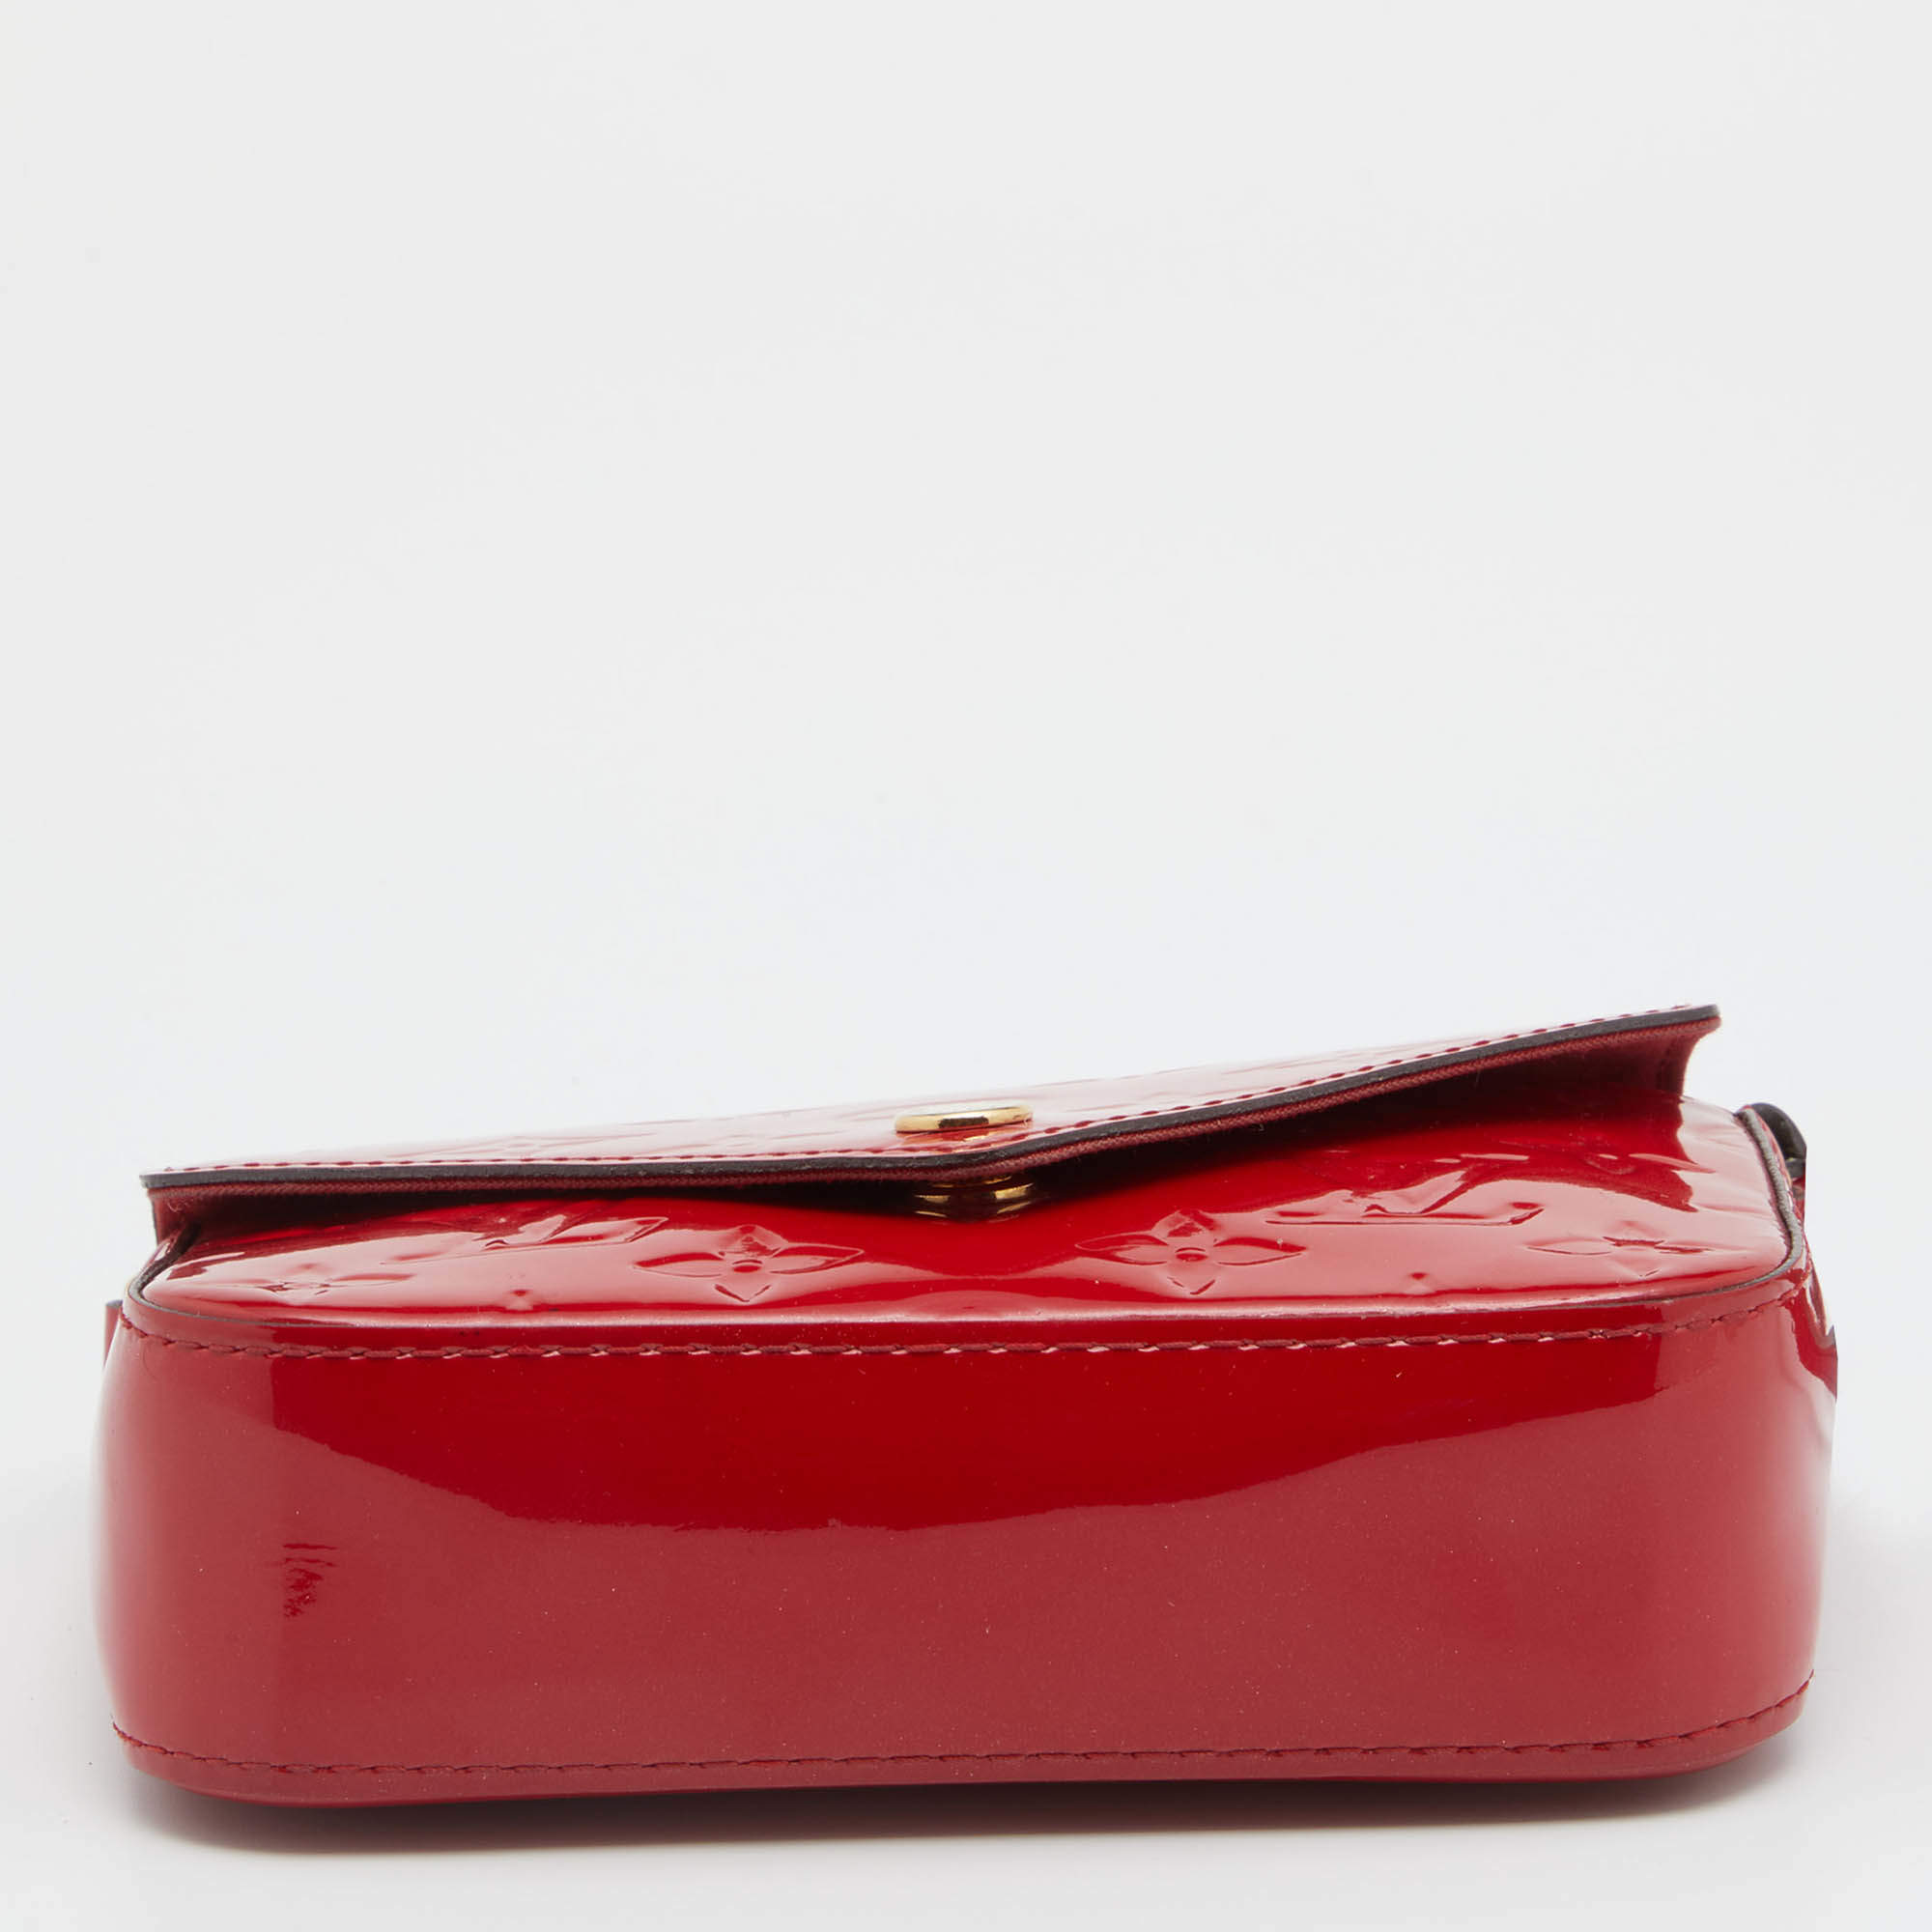 Louis Vuitton Monogram Vernis Sac Lucie Mini Shoulder Bag, Louis Vuitton  Handbags